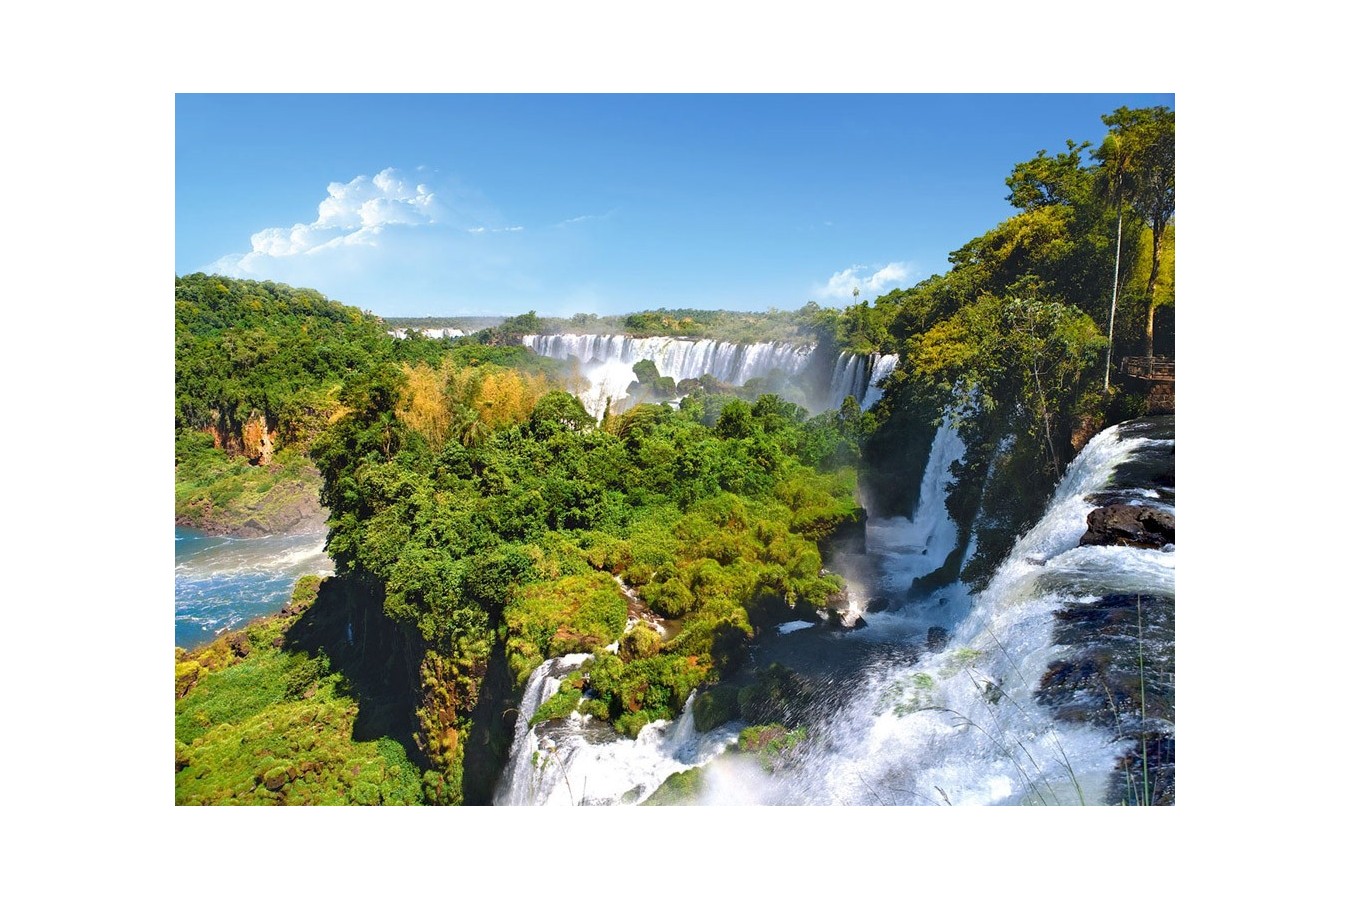 Puzzle Castorland - Iguazu Falls Argentina, 1000 piese